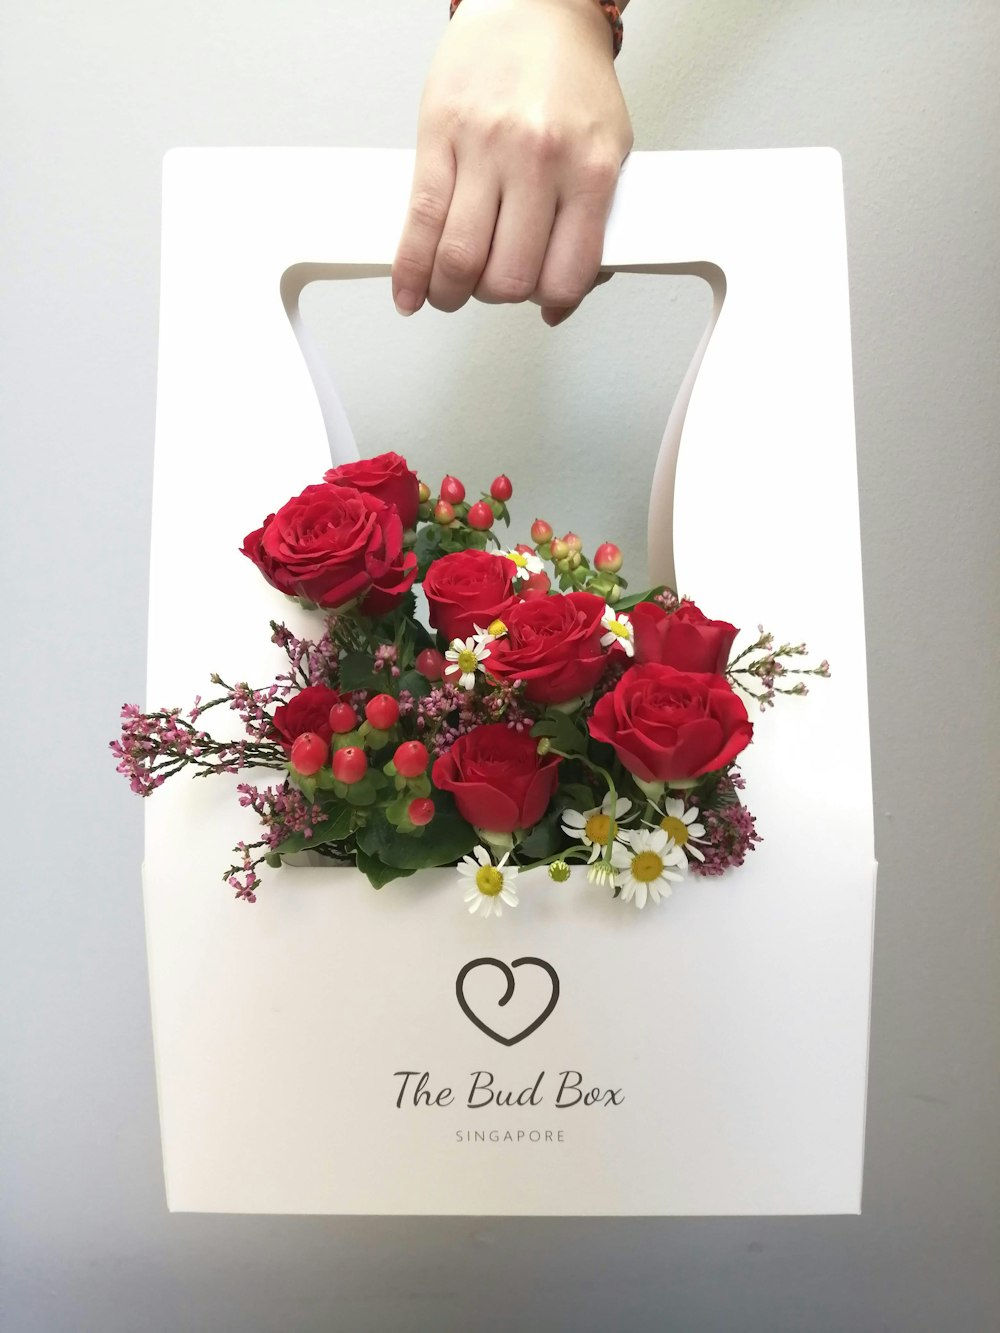 Una persona sosteniendo una caja blanca con rosas rojas en ella